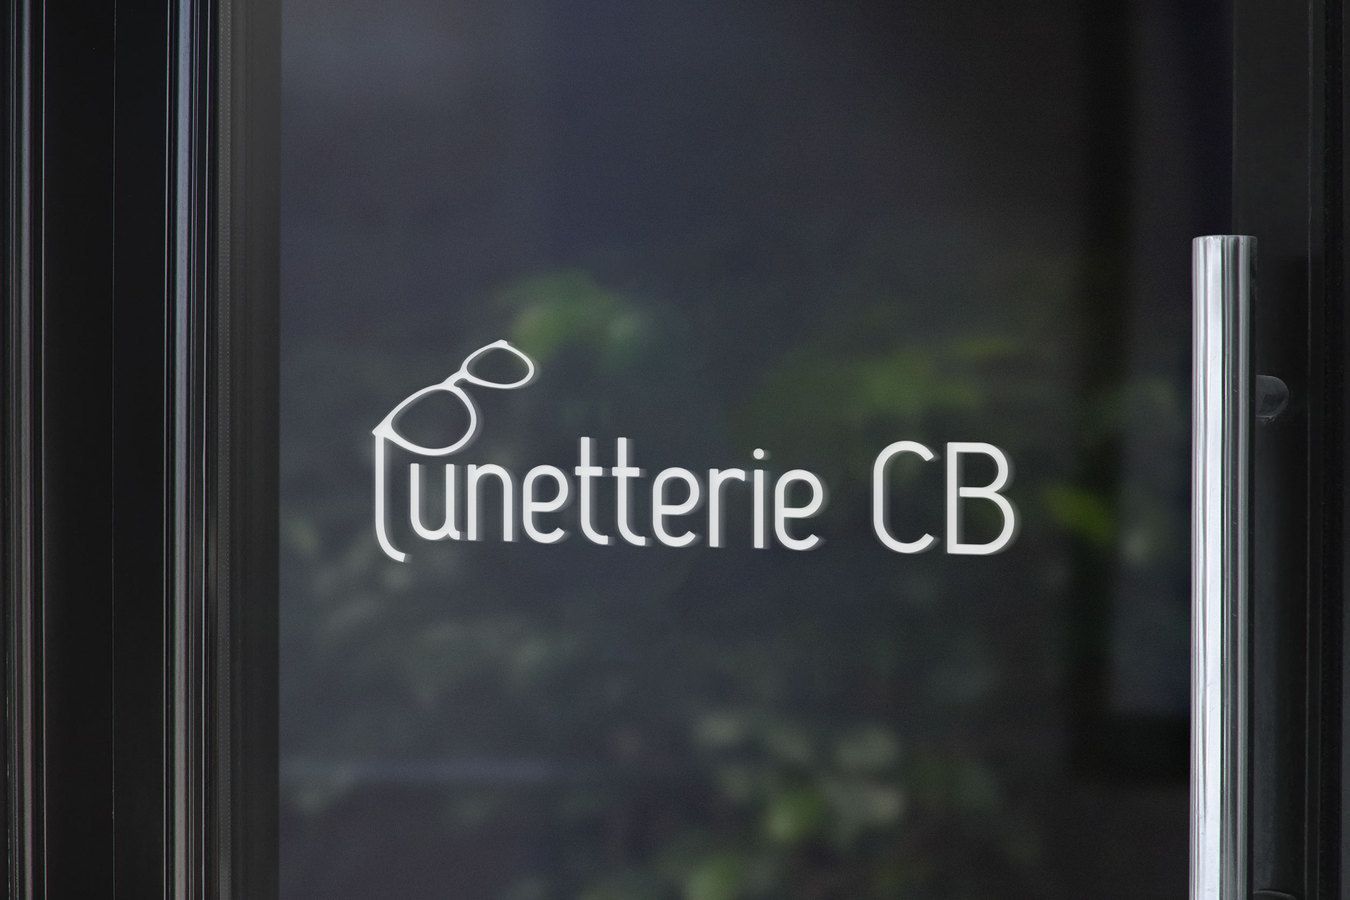 Création du logo pour Lunetterie CB